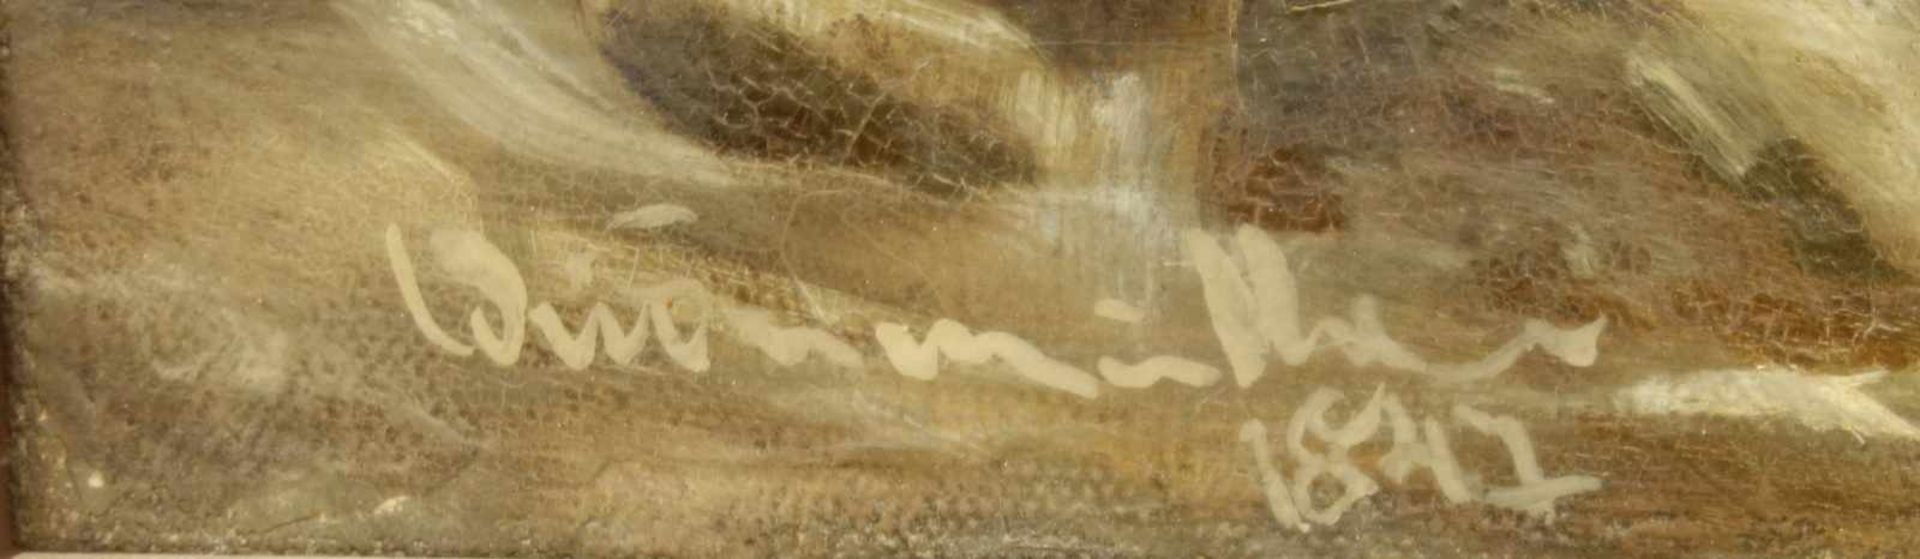 undeutlich signiert, Landschaftsmaler, Winterliche Dorfansicht, dat. 1847 Öl/Lw., unten rechts - Bild 2 aus 2